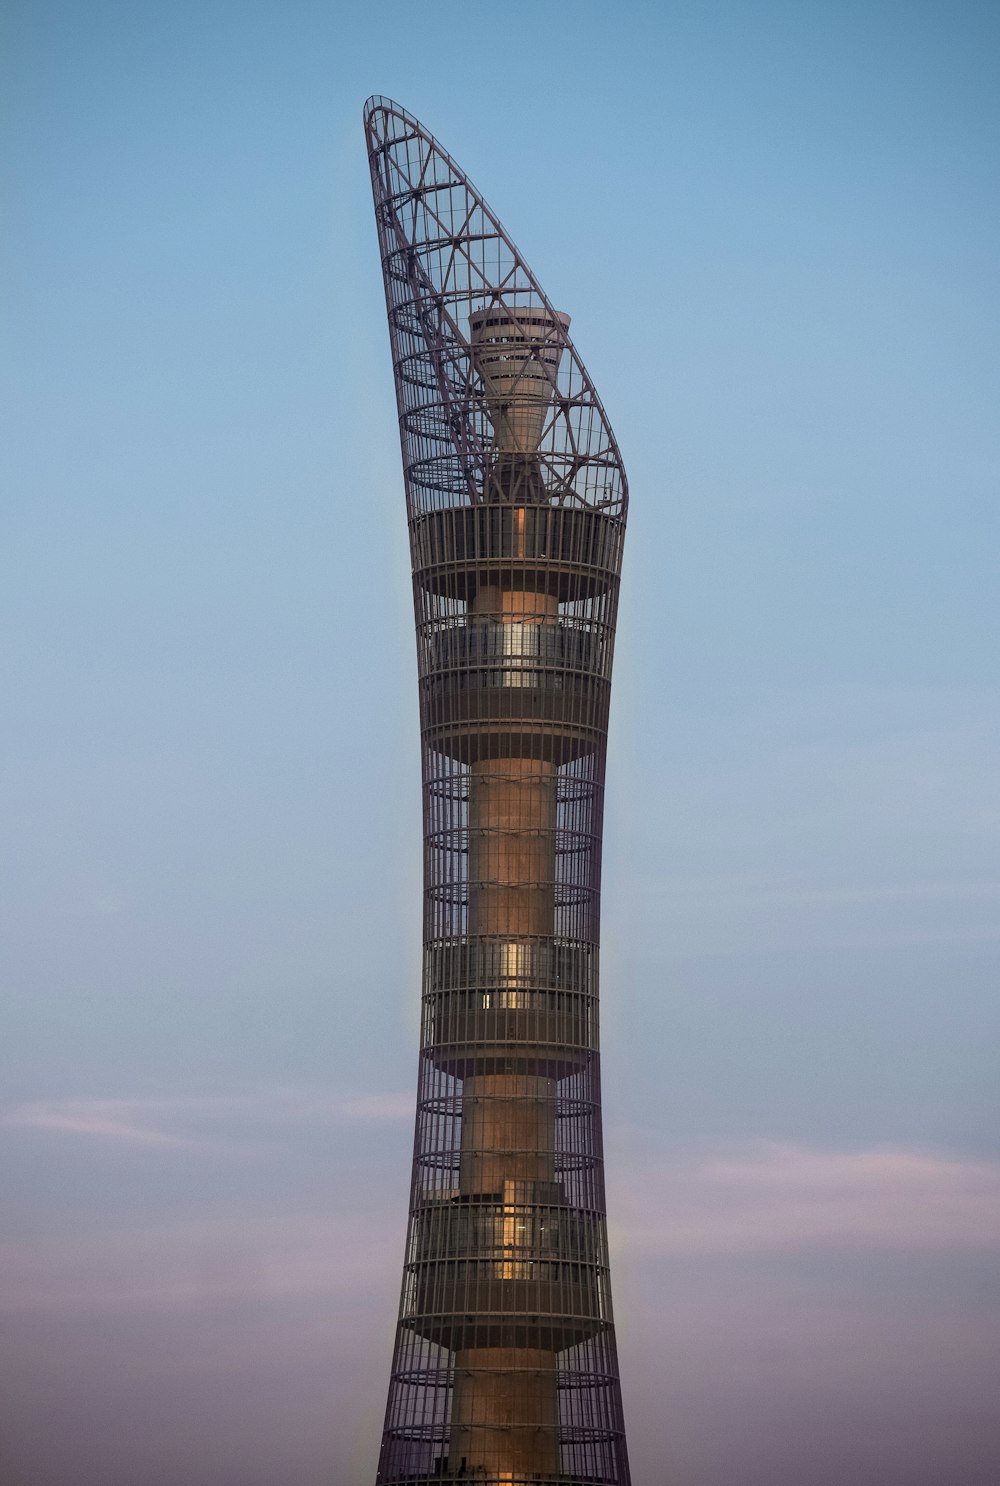 gray metal tower during daytime